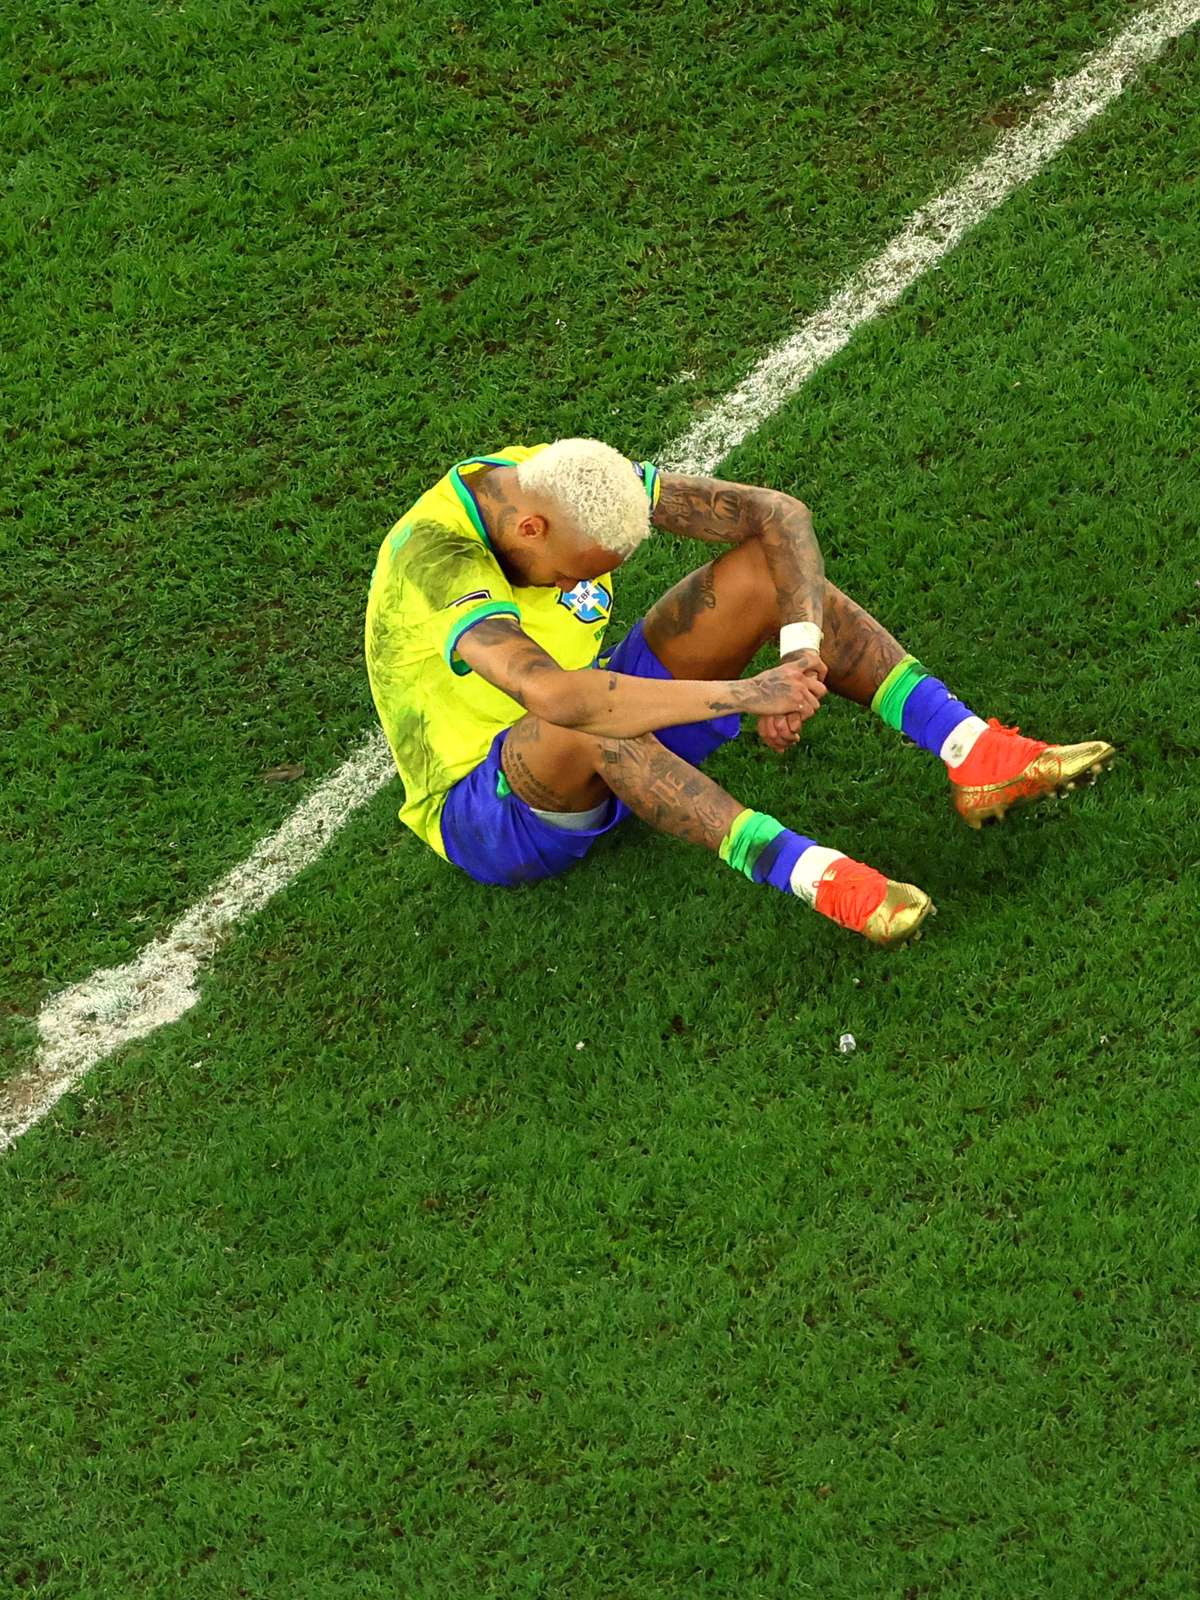 Brasil perde nos pênaltis e é eliminado da Copa do Mundo do Catar